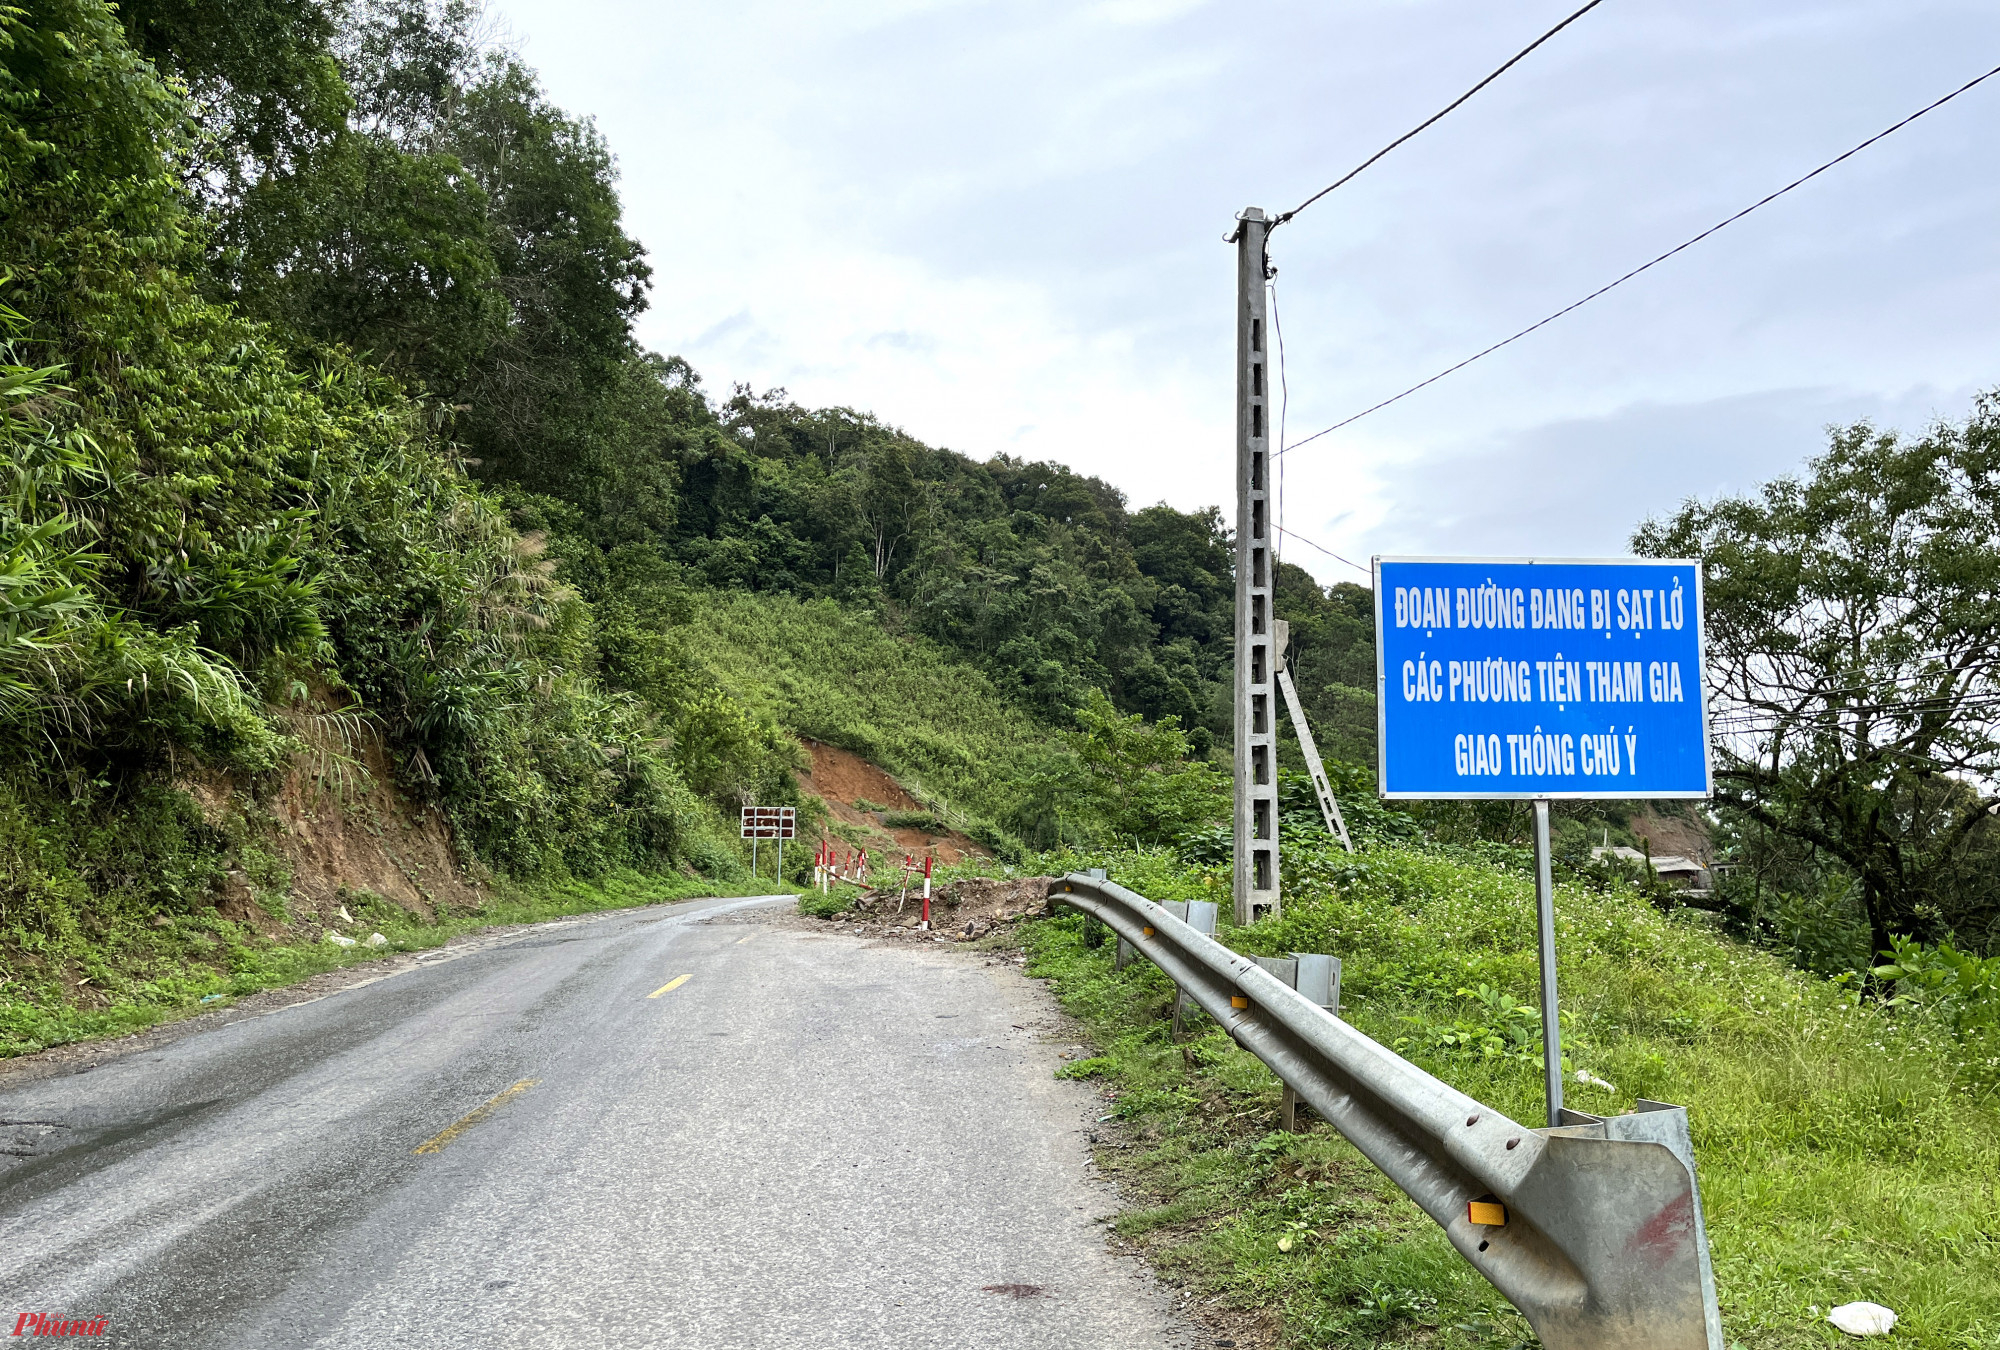 Quốc lộ 7 dài 220km, xuất phát từ điểm giao với quốc lộ 1A tại huyện Diễn Châu, Nghệ An và kết thúc tại cửa khẩu quốc tế Nậm Cắn. Đây là tuyến đường huyết mạch từ Nghệ An đi sang Lào, mỗi ngày có hàng trăm chuyến xe qua Lào và ngược lại thông qua cửa khẩu quốc tế Nậm Cắn. Lòng đường quốc lộ 7 khá hẹp, một bên là sông, bên còn lại là đồi núi.